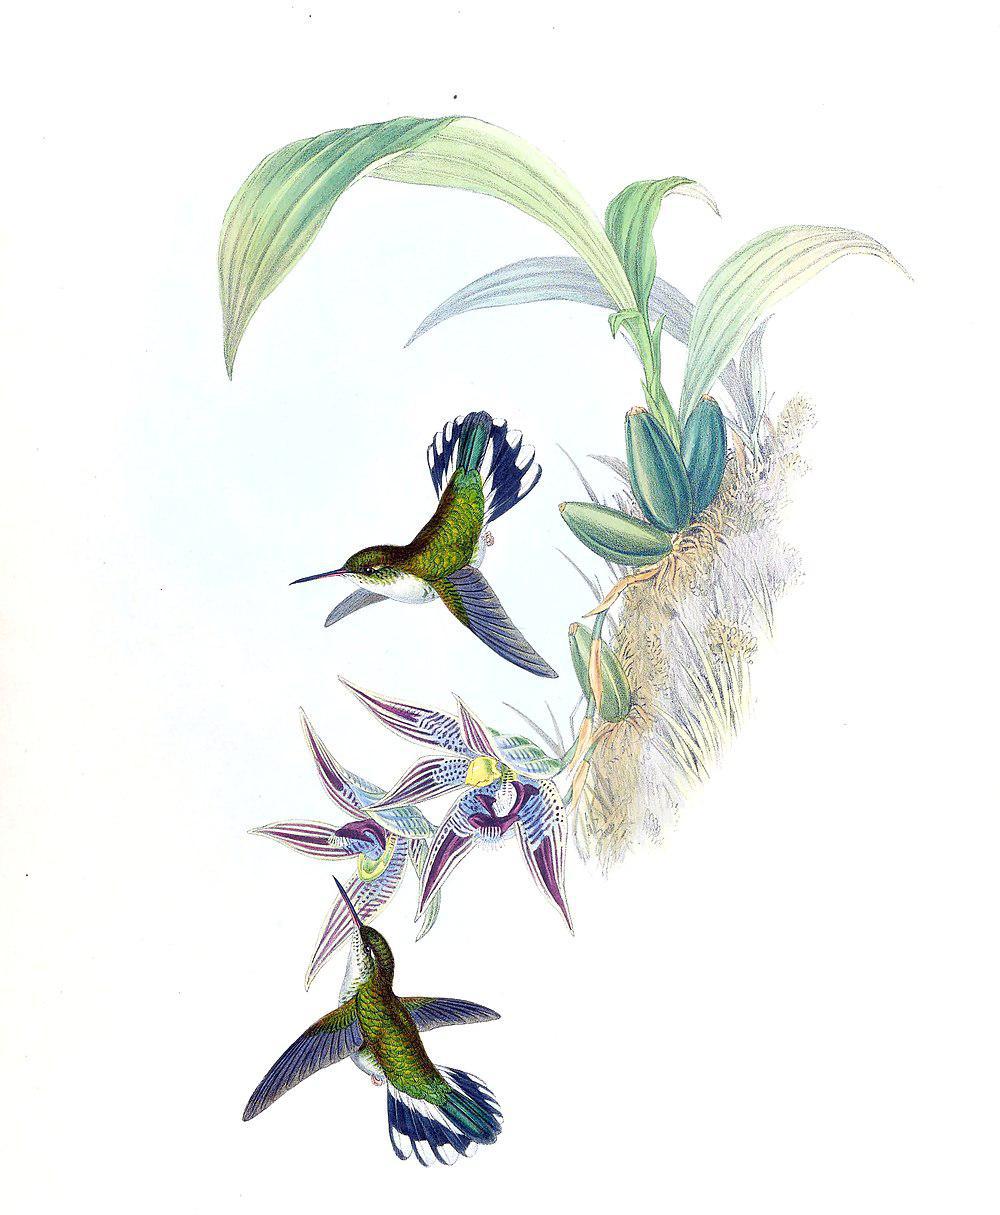 厄瓜多尔斑尾蜂鸟 / Ecuadorian Piedtail / Phlogophilus hemileucurus